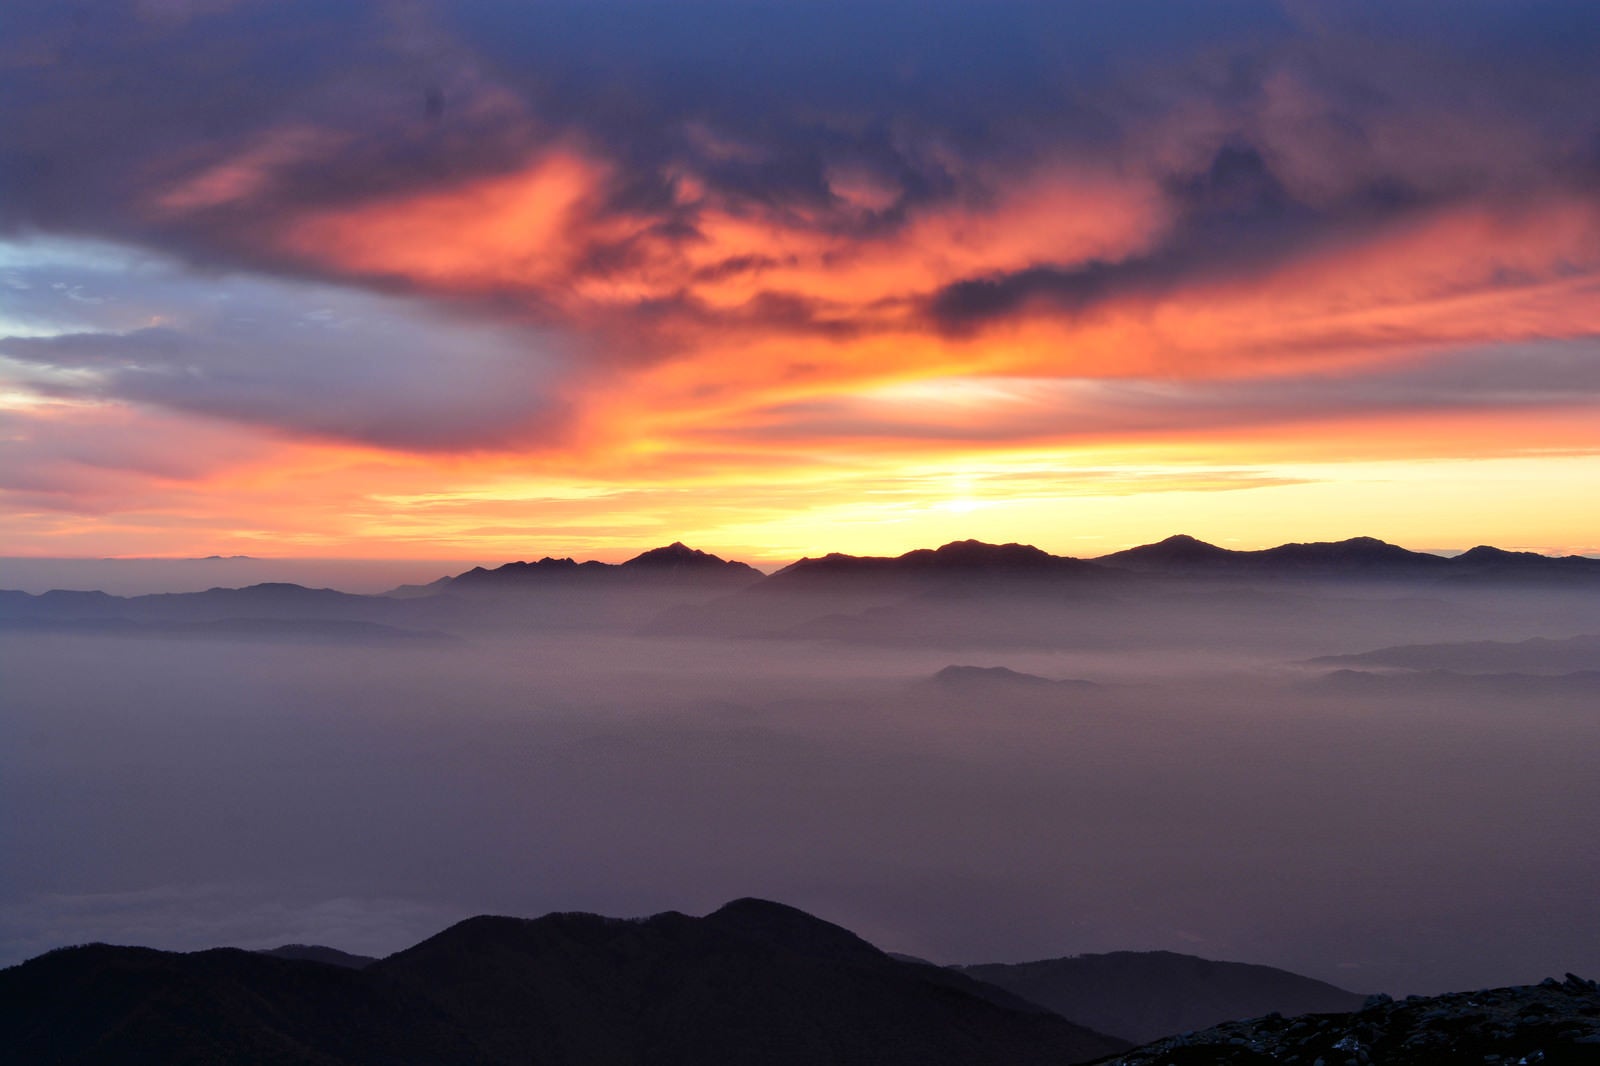 「夕焼けに染まる南アルプスのシルエットと雲海の様子」の写真